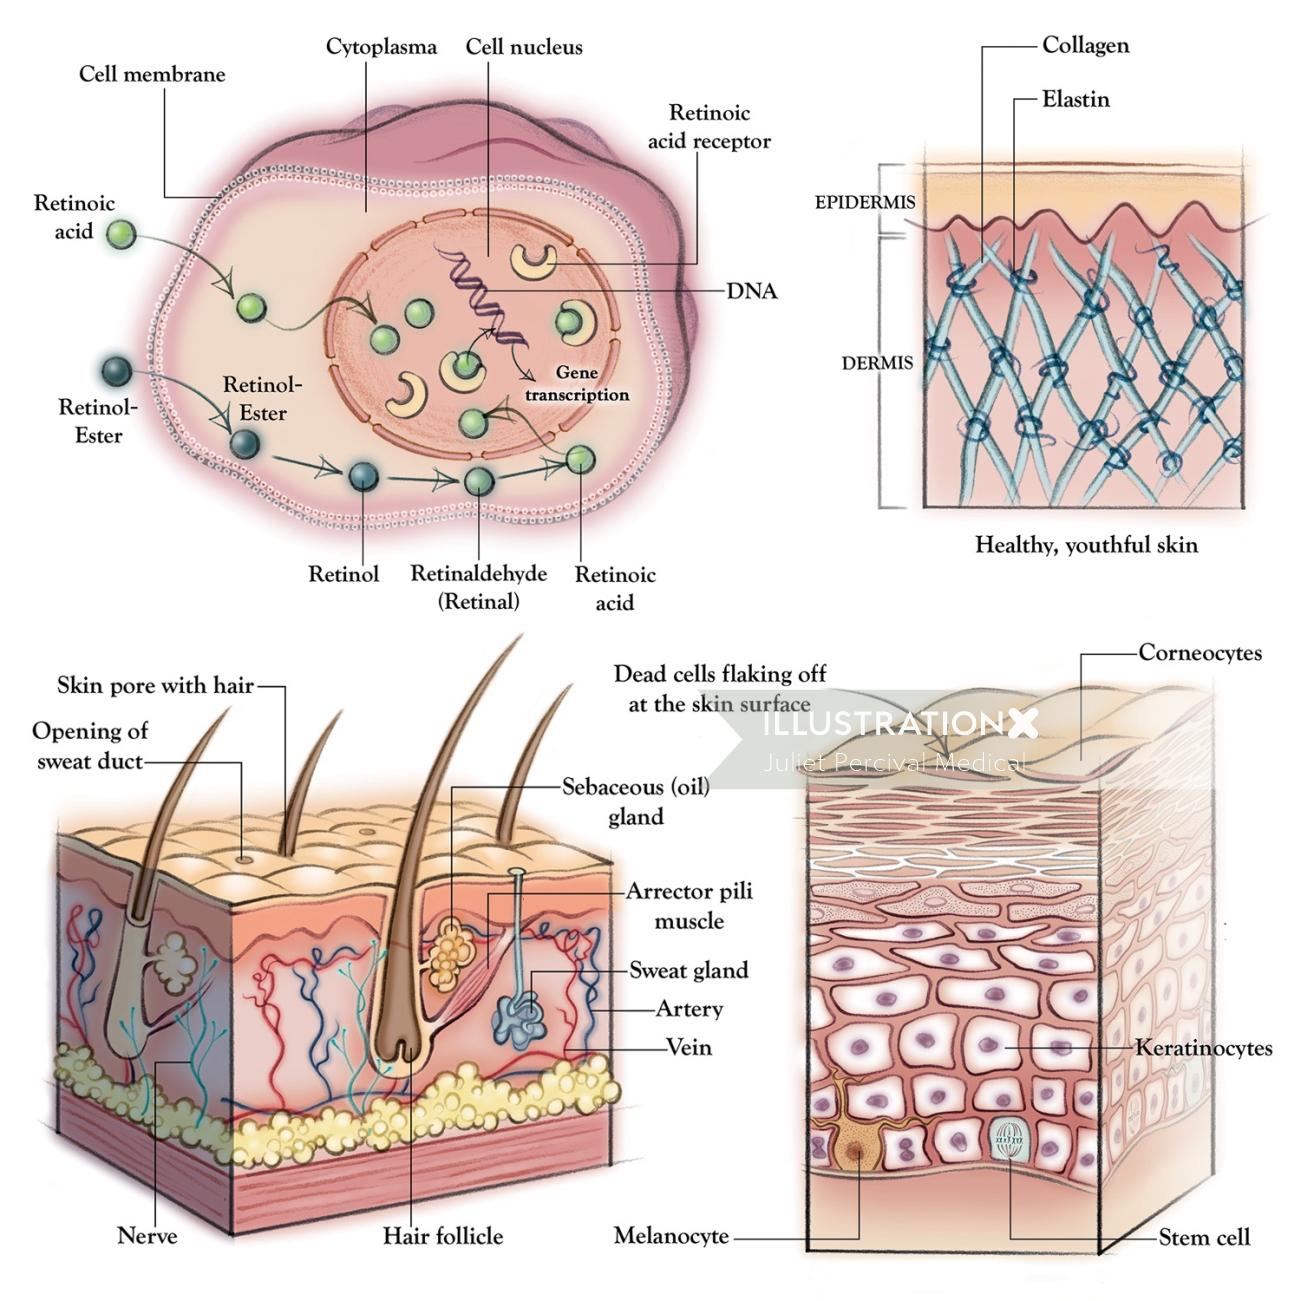 anatomie, peau, dermatologie, collagène, élastine, follicule pileux, membrane cellulaire, épiderme